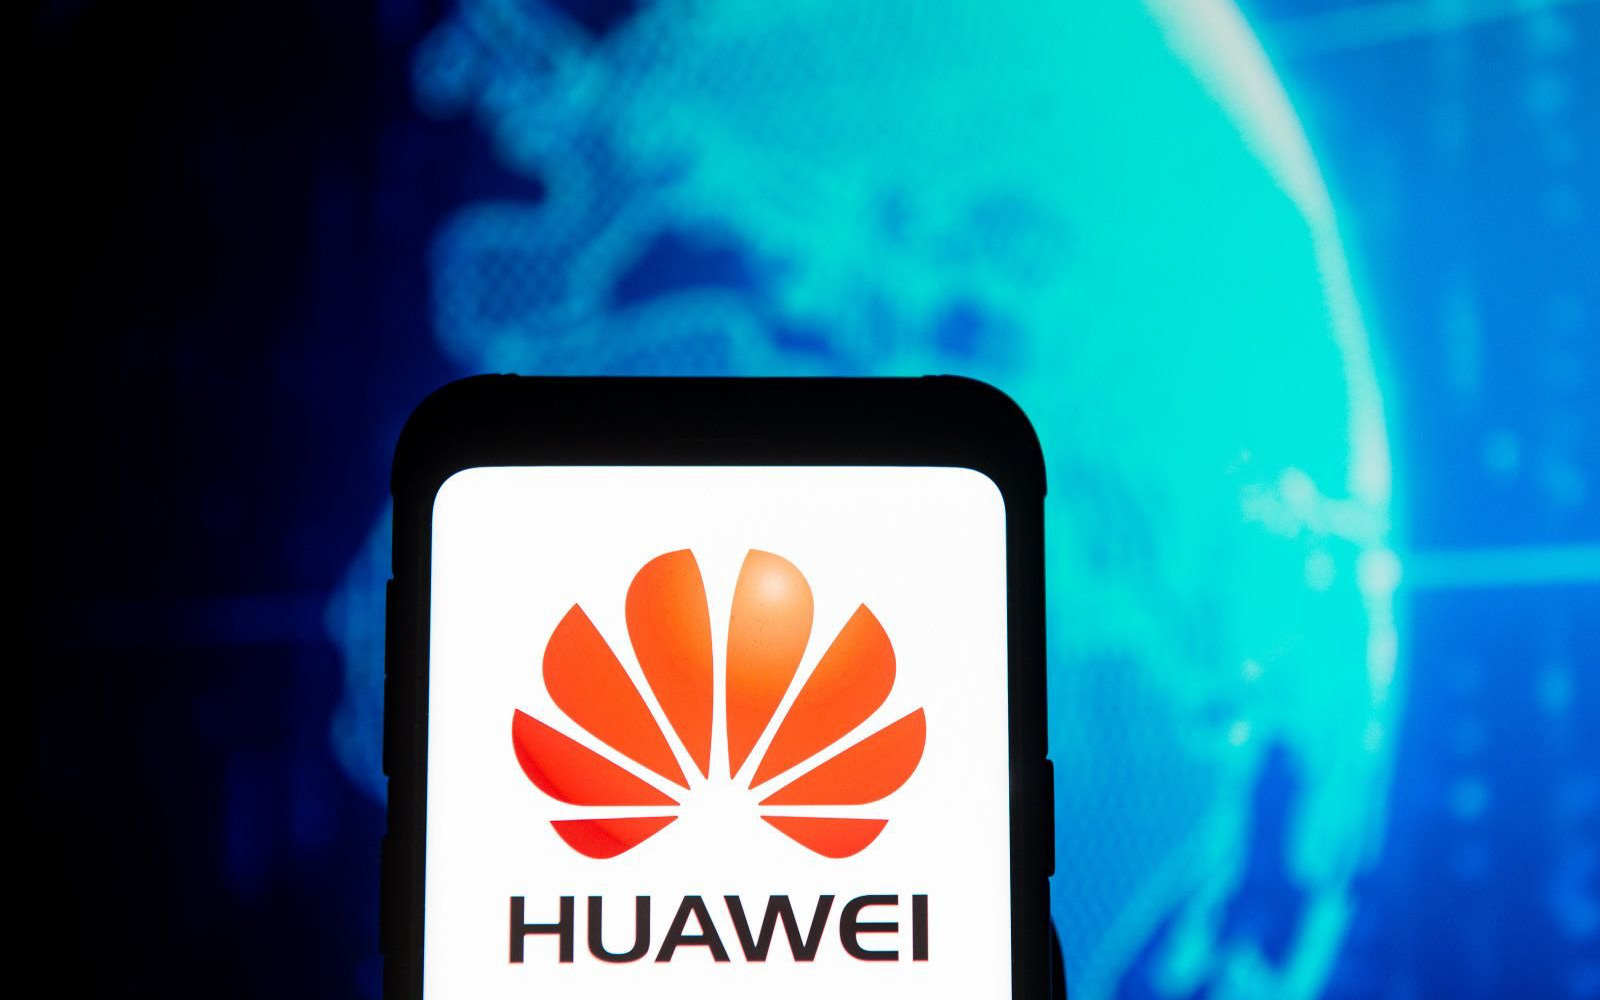 Kế hoạch chặn nguồn cung chip cho Huawei có một lỗ hổng nghiêm trọng và quan chức Mỹ đang tìm cách bít nó lại